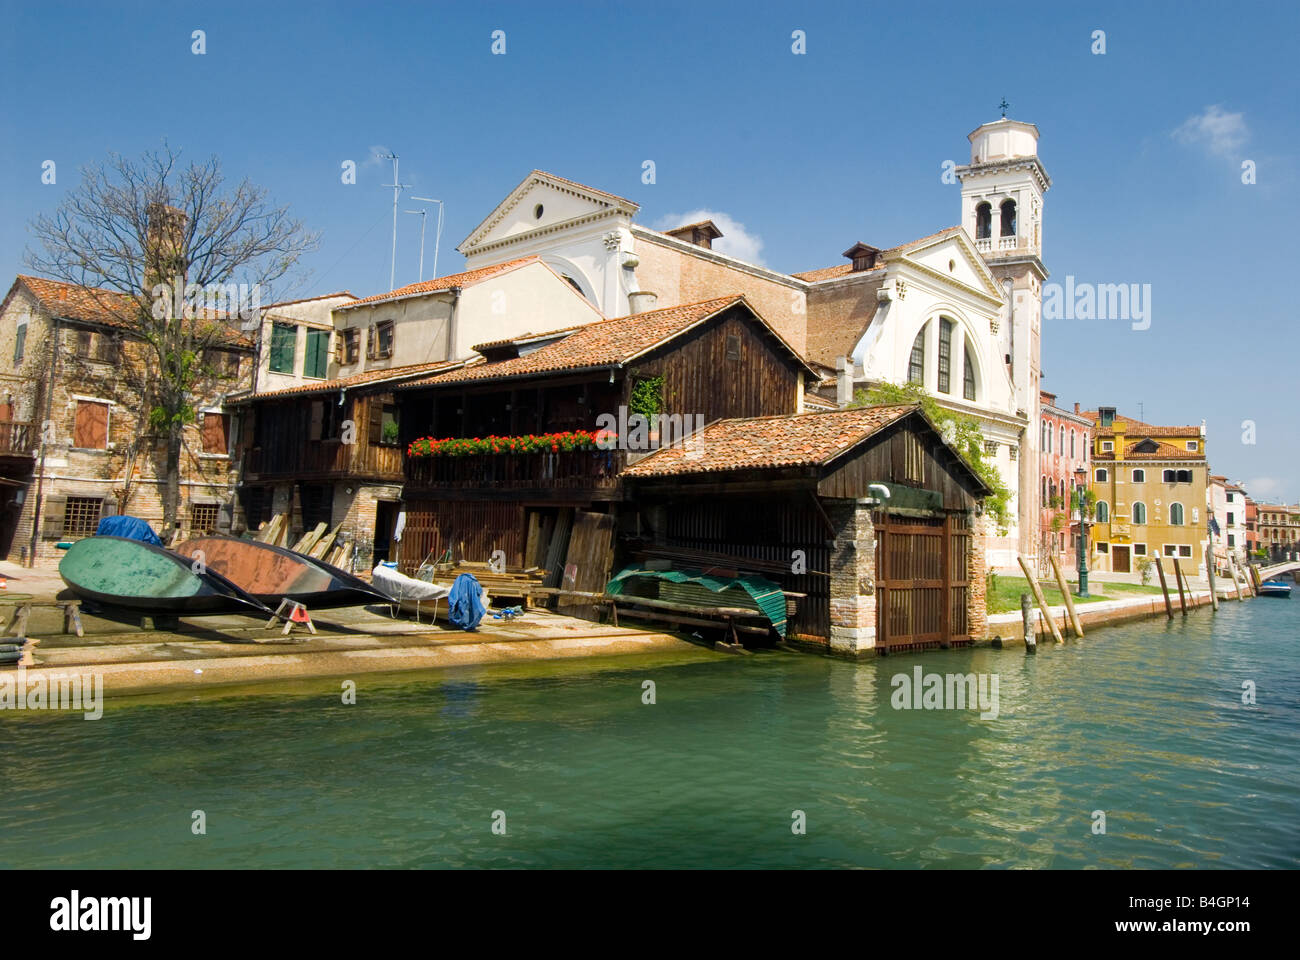 Atelier de réparation de gondoles sur les canaux de Venise Italie Banque D'Images